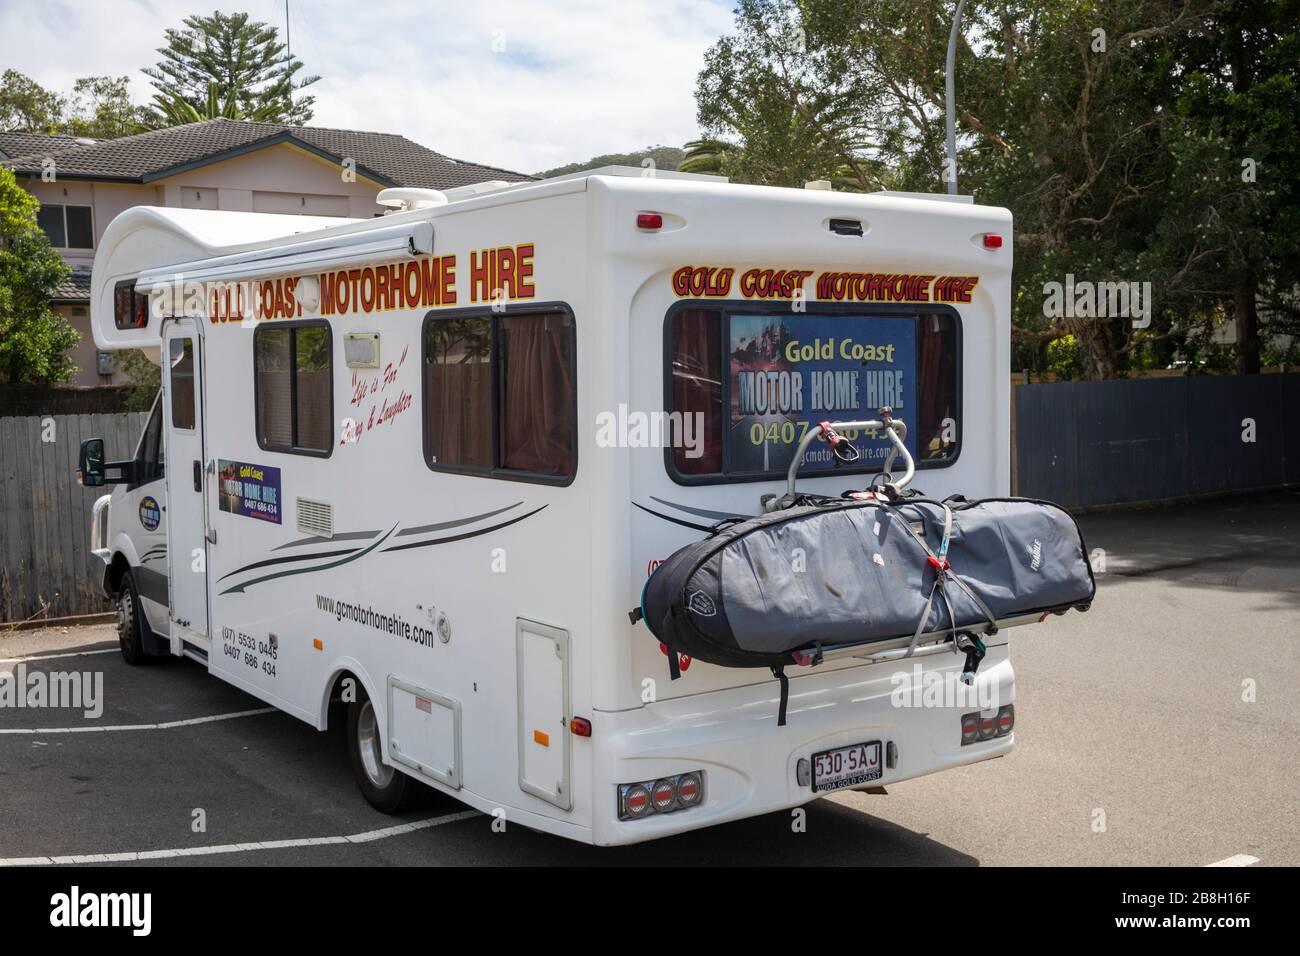 Véhicule de camping-car de la Gold Coast australienne Banque D'Images